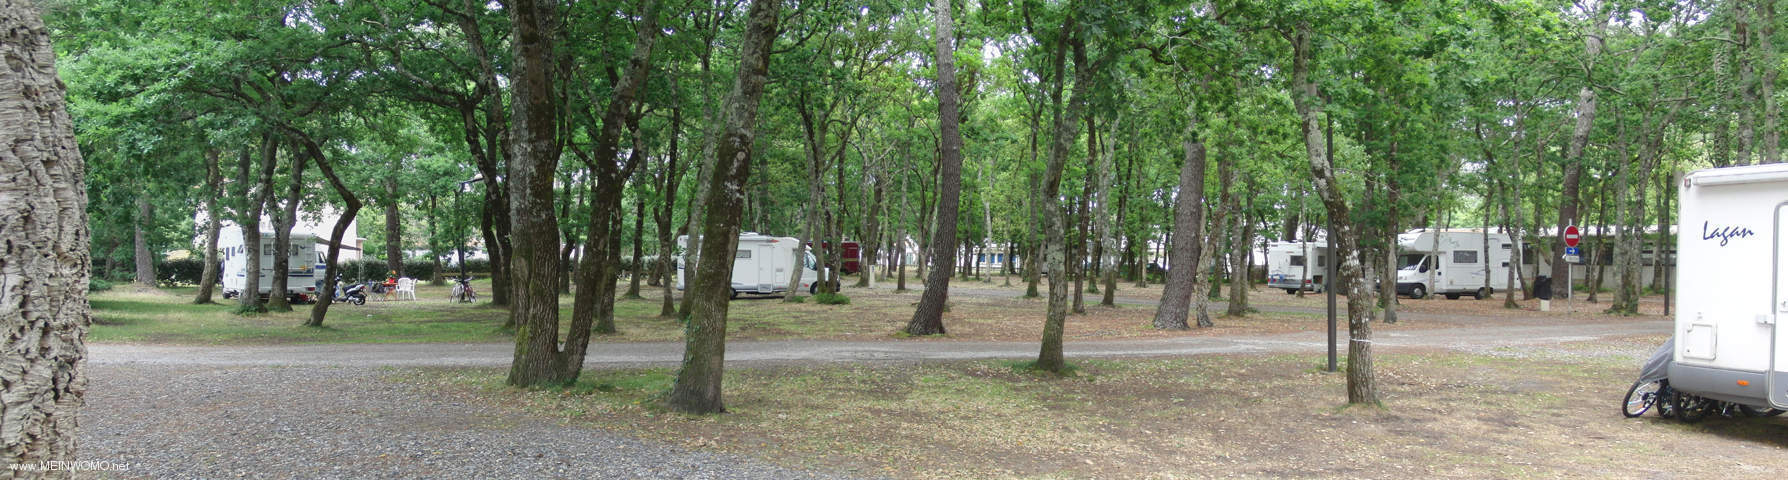  Vieux Boucao les Bains - parkering under trd i juni 2010 